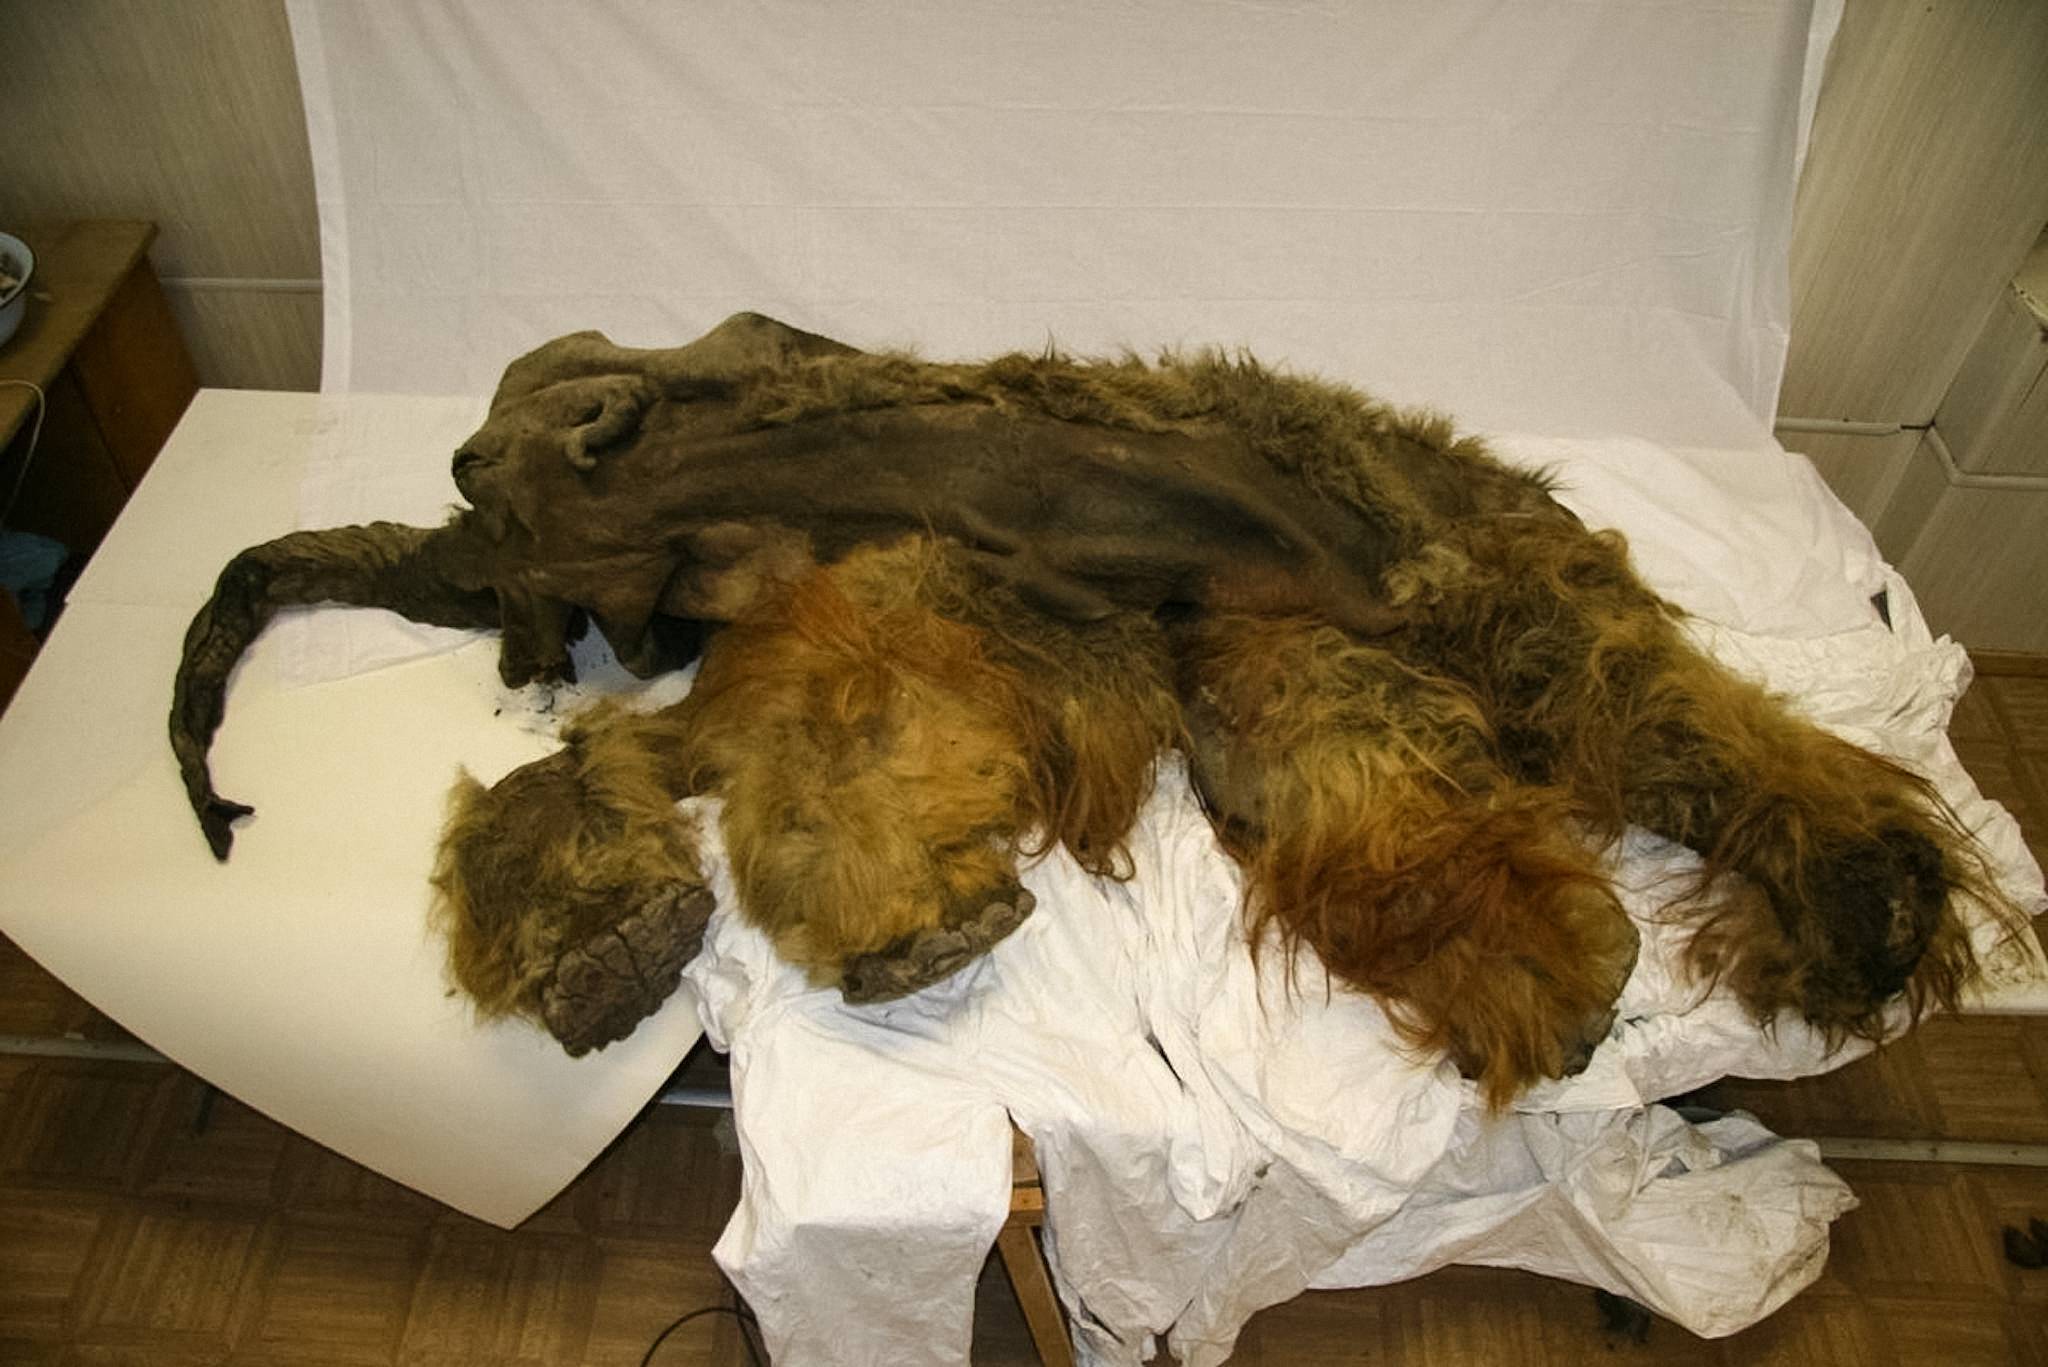 Муміфіковані останки шерстистого мамонта віком 28,000 2010 років були знайдені в серпні 6 року на узбережжі моря Лаптєвих поблизу Юкагіра, Росія. Мамонтеняті на ім'я Юка було від 9 до XNUMX років, коли вона померла. © Зображення надано Анастасією Харламовою